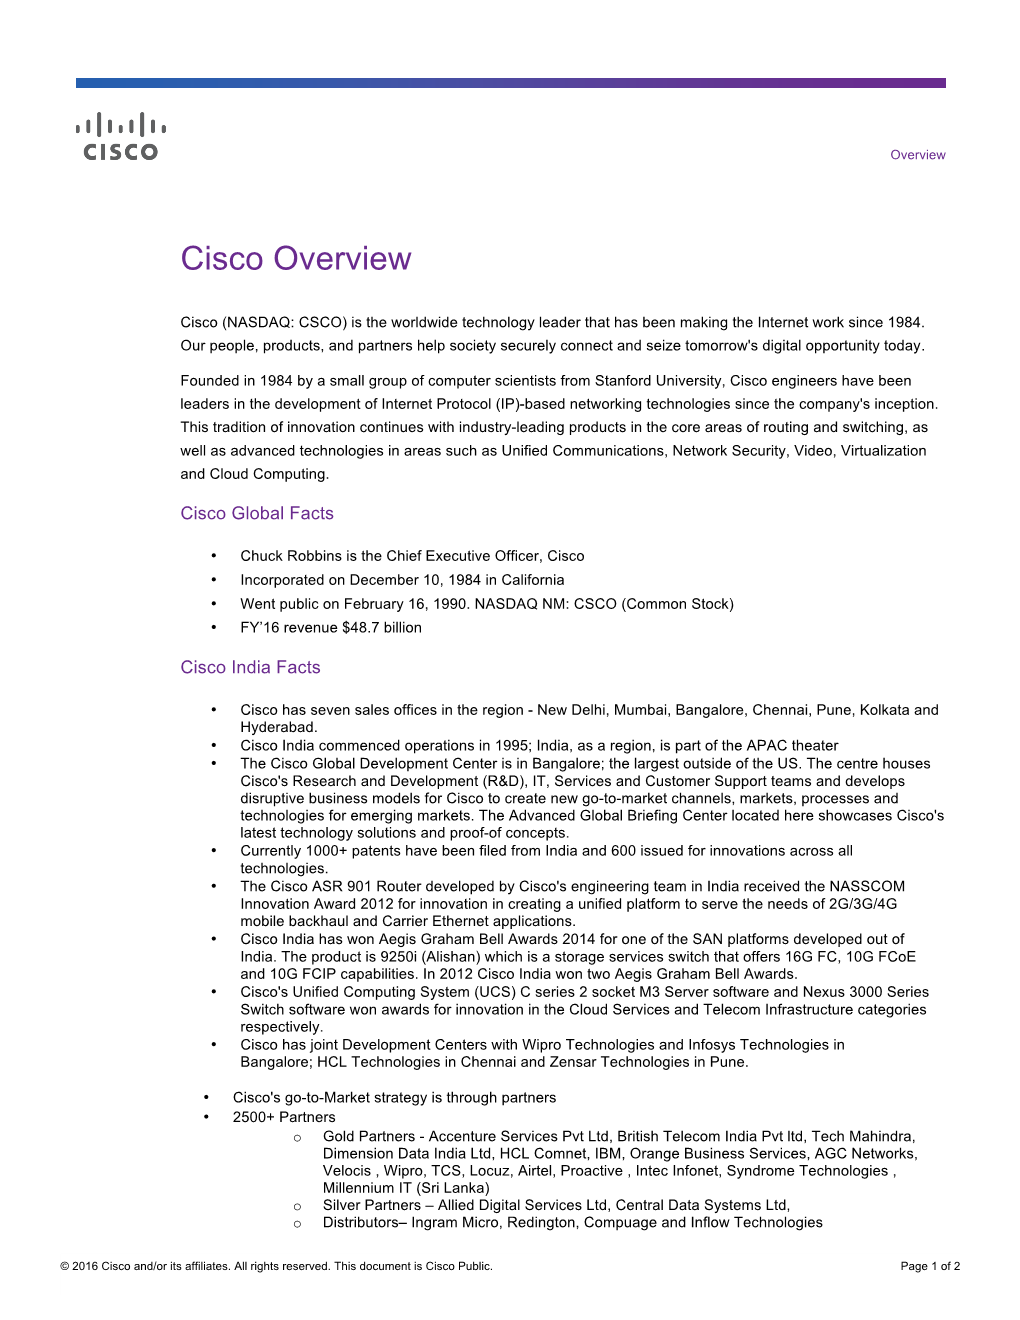 Cisco Overview